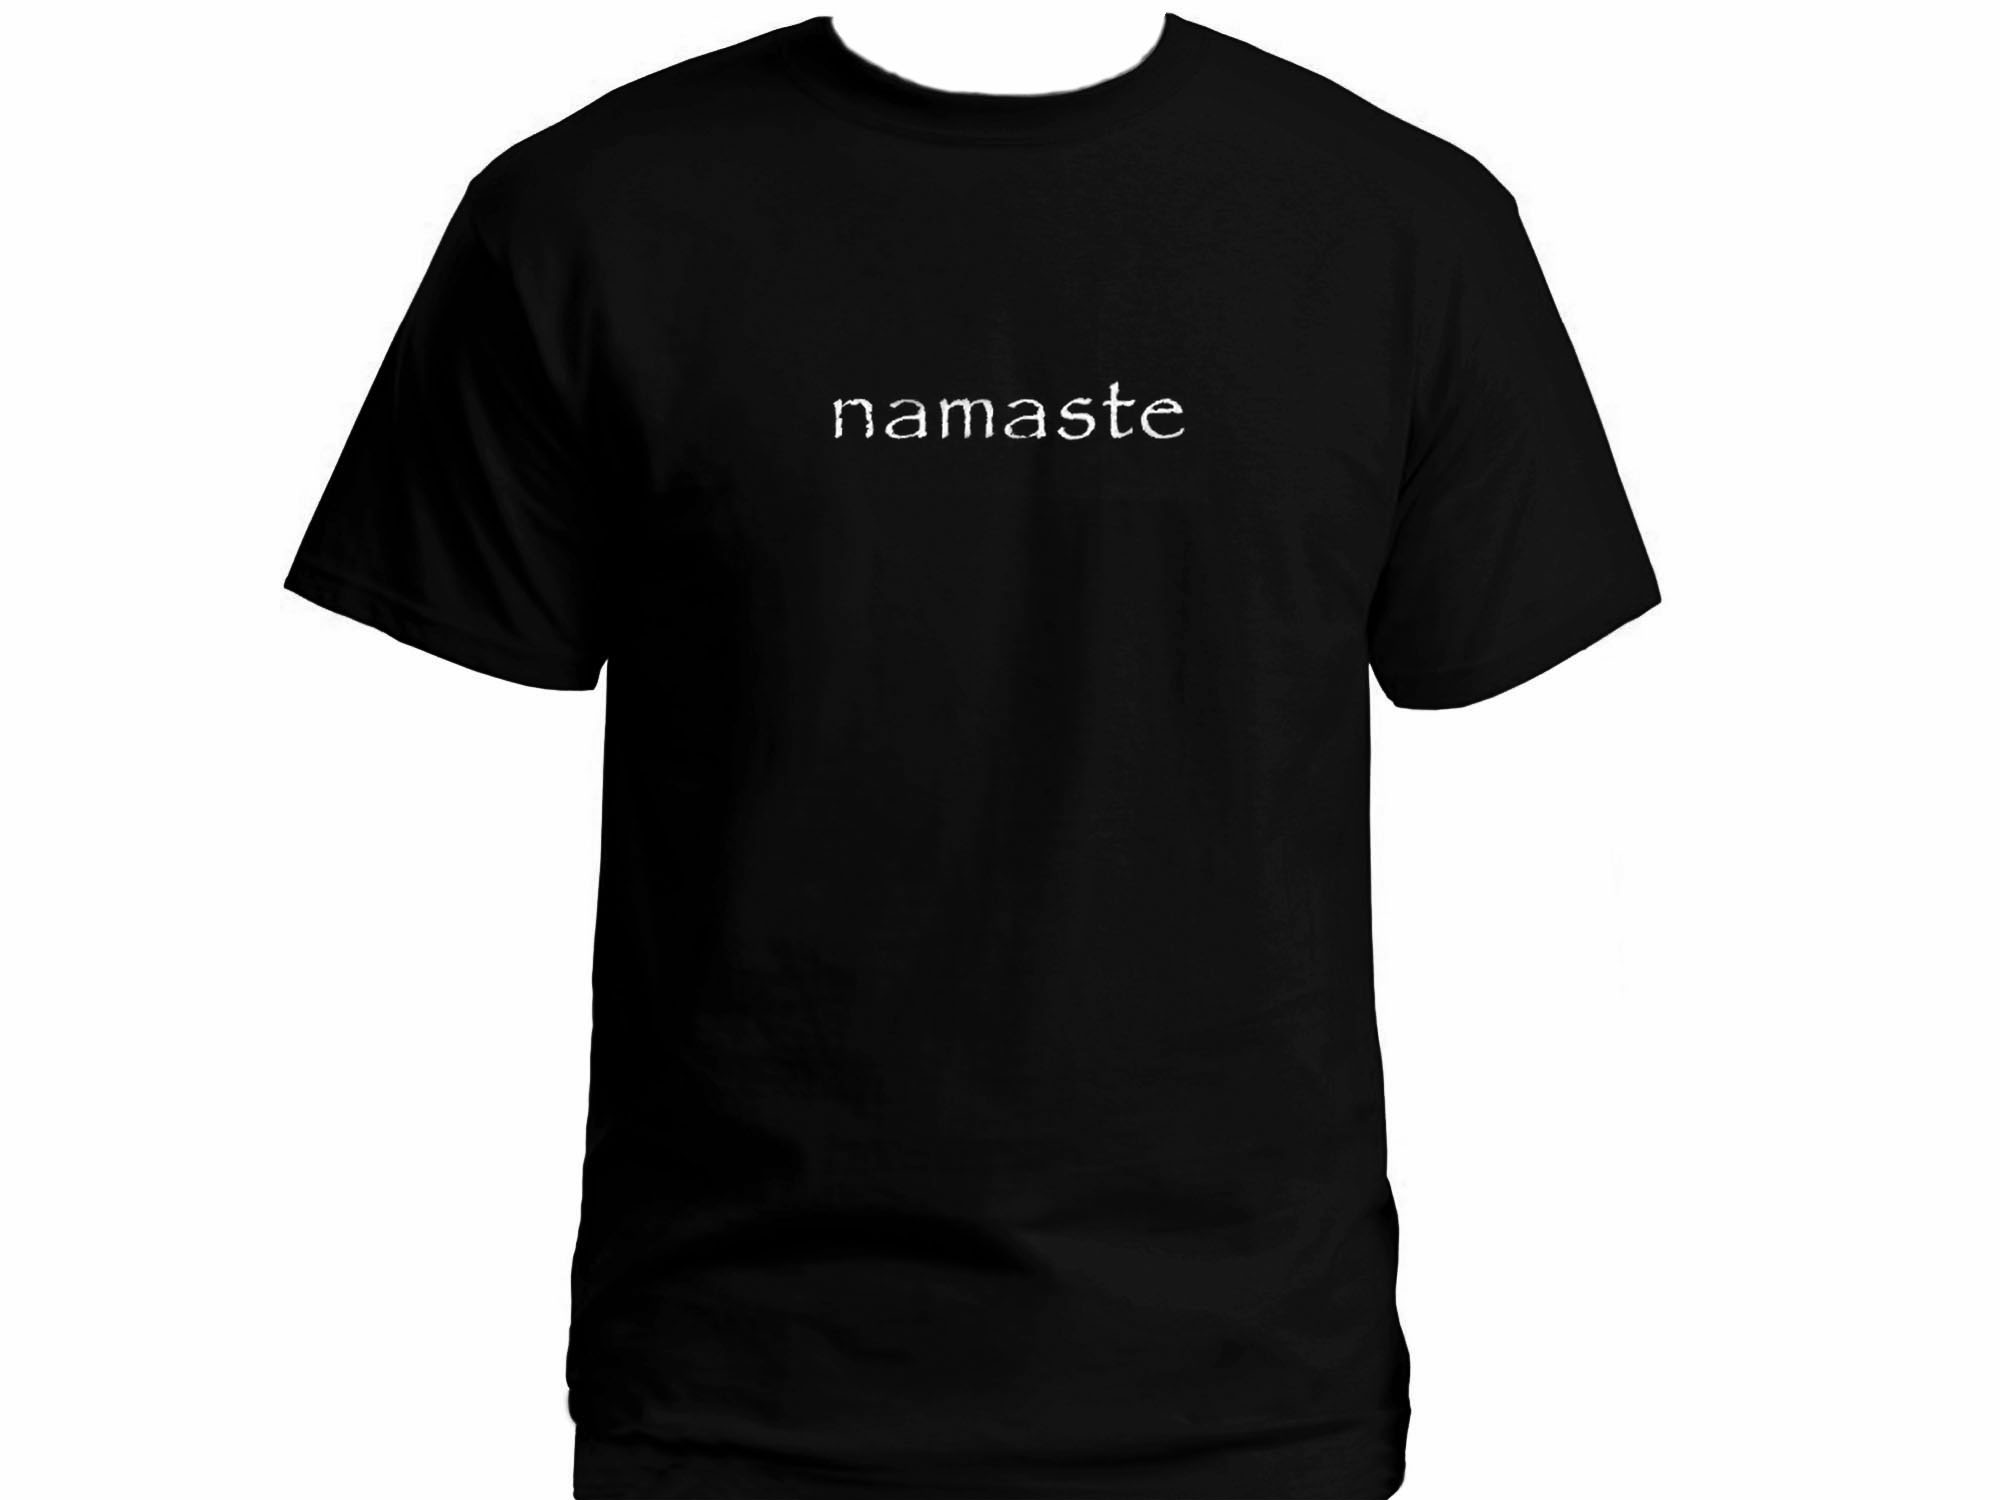 Namaste yoga wear t-shirt